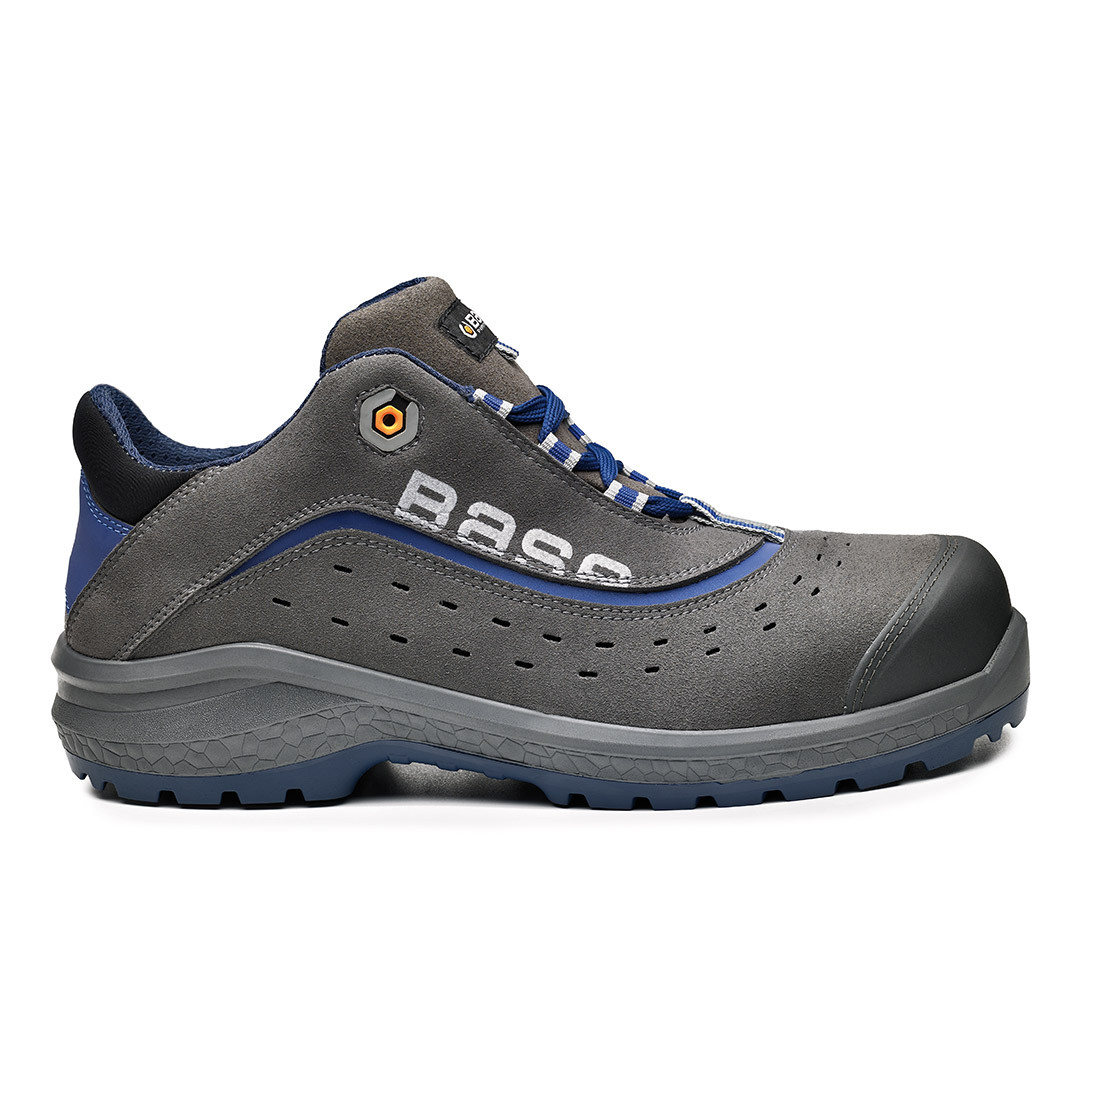 Pantofi Be-Light S1P SRC - Incaltaminte de protectie | Bocanci, Pantofi, Sandale, Cizme